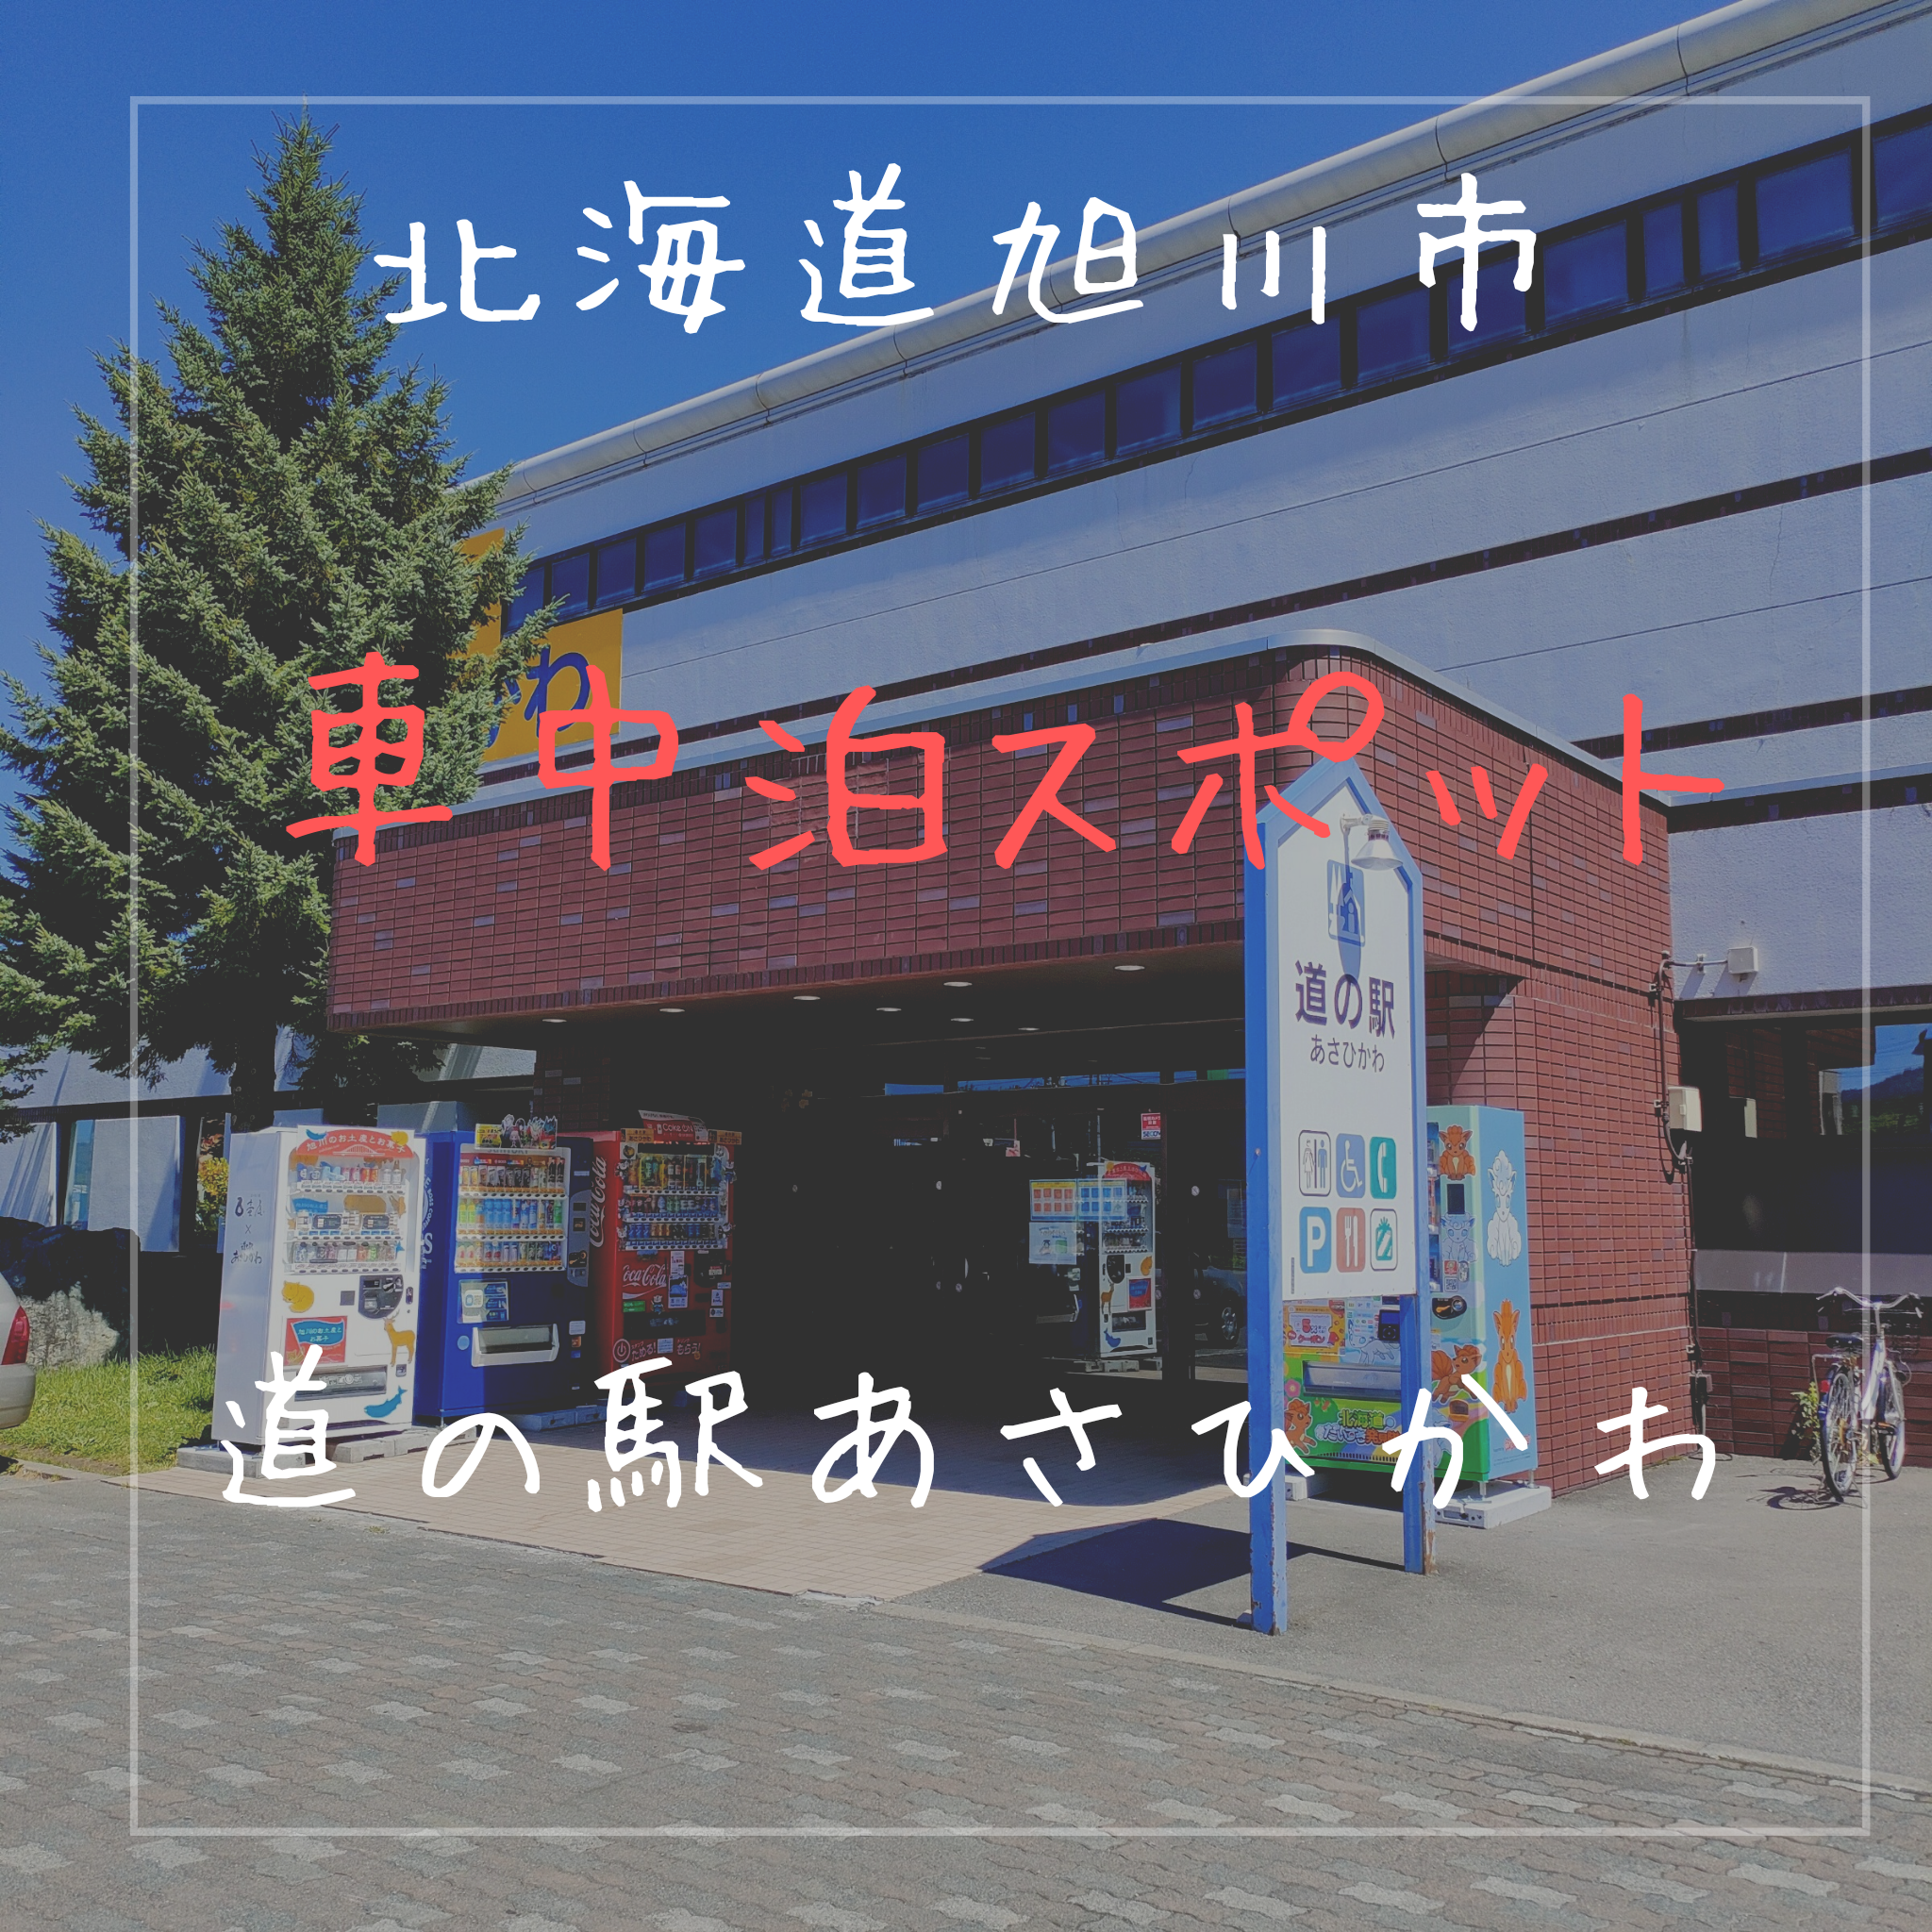 車中泊スポット 北海道旭川市にある 道の駅あさひかわ は旭川観光に便利な道の駅でした Nanana Blog